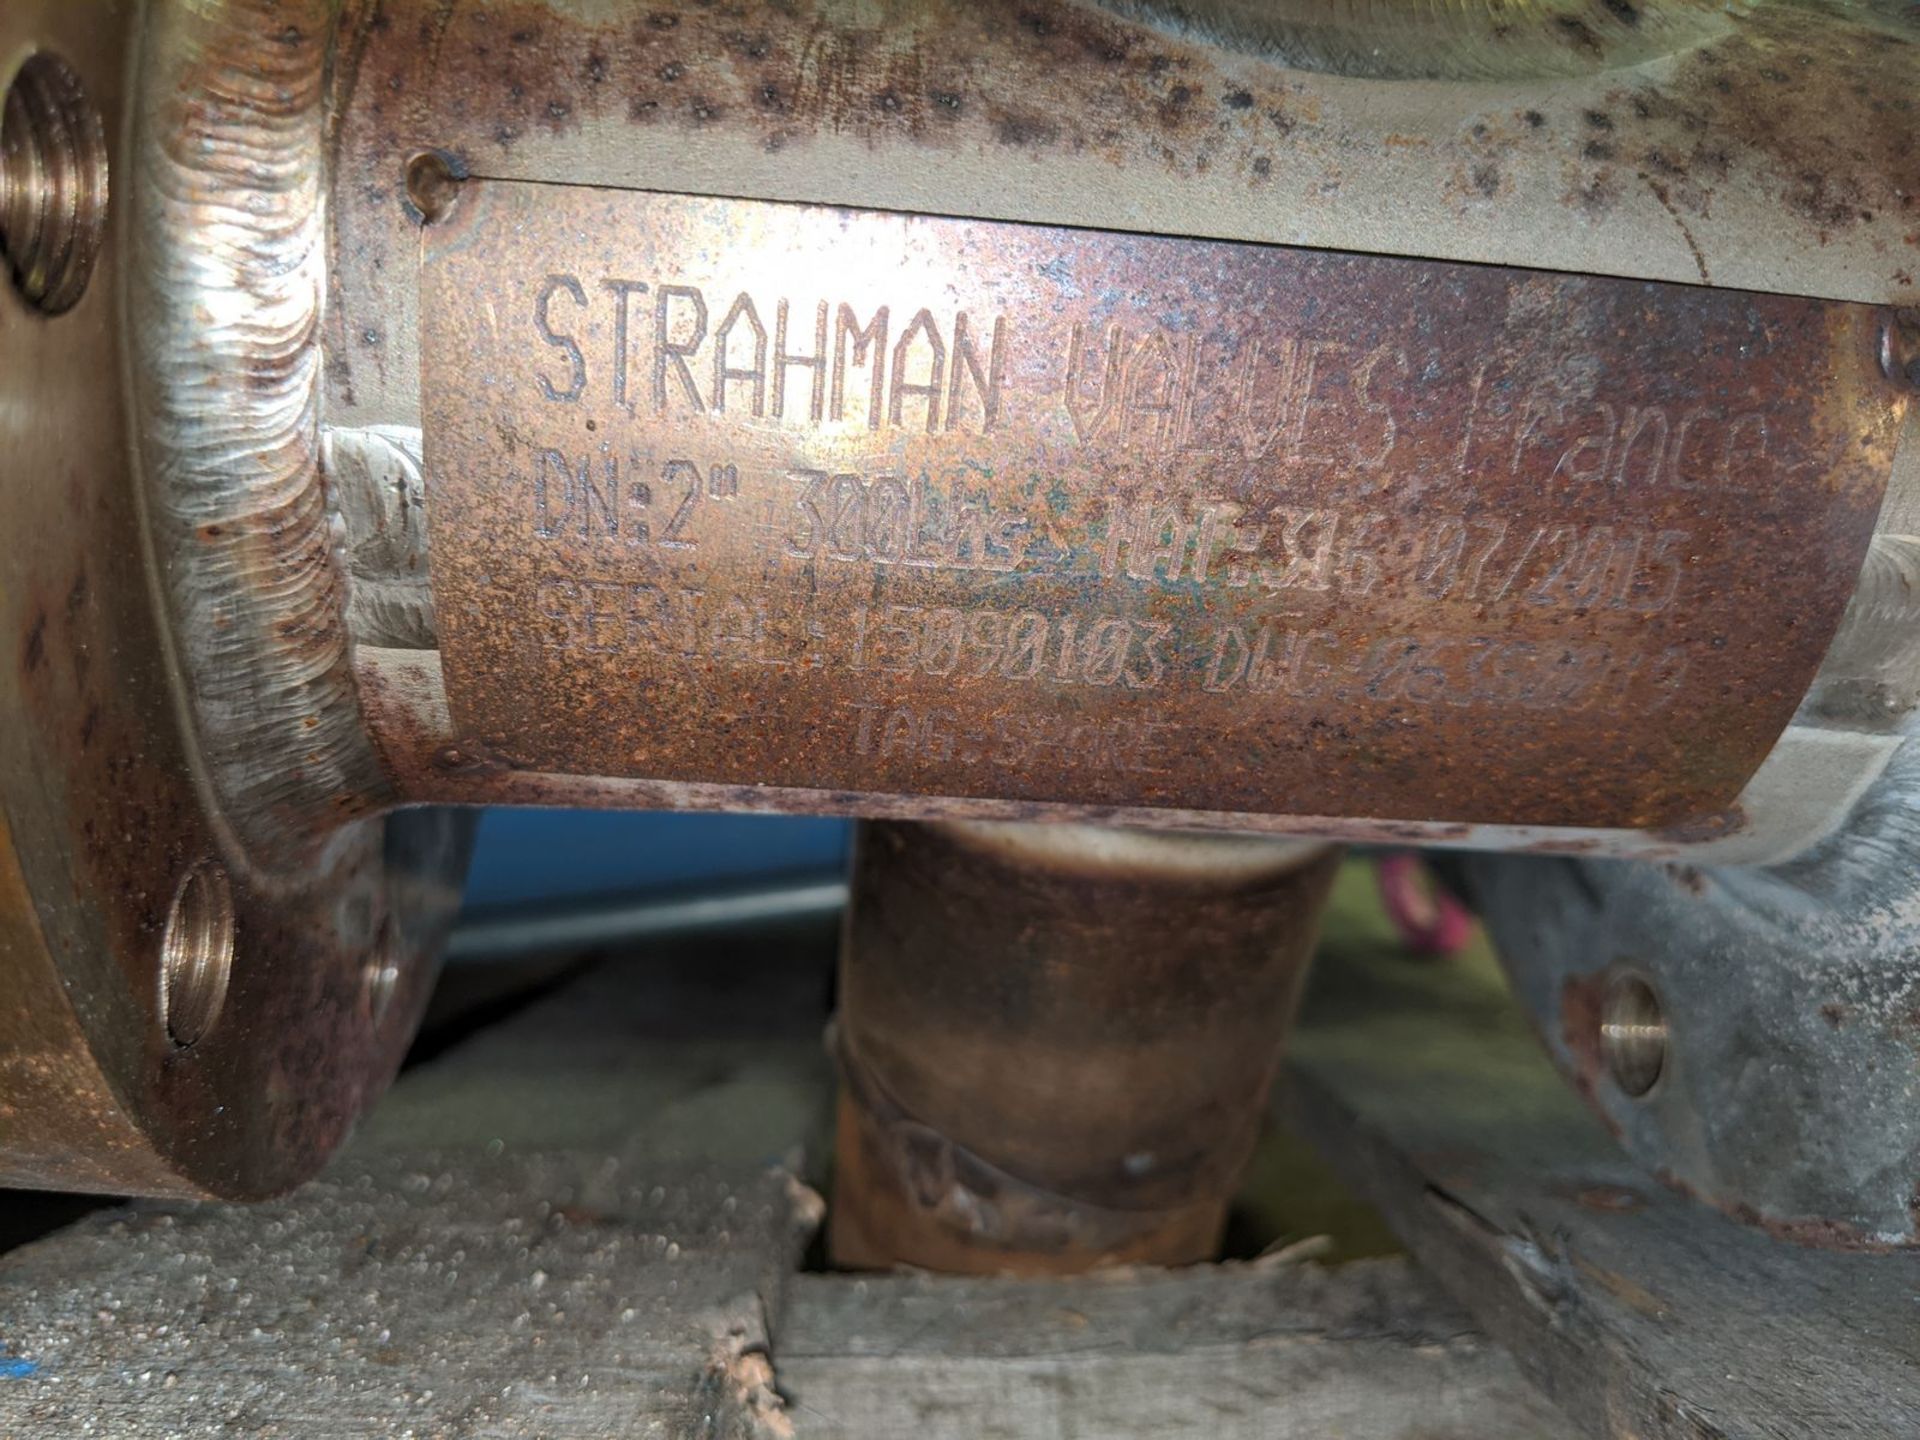 Strahman 2" 316 Pnuematic Actuated Sodium Valve - Image 3 of 3